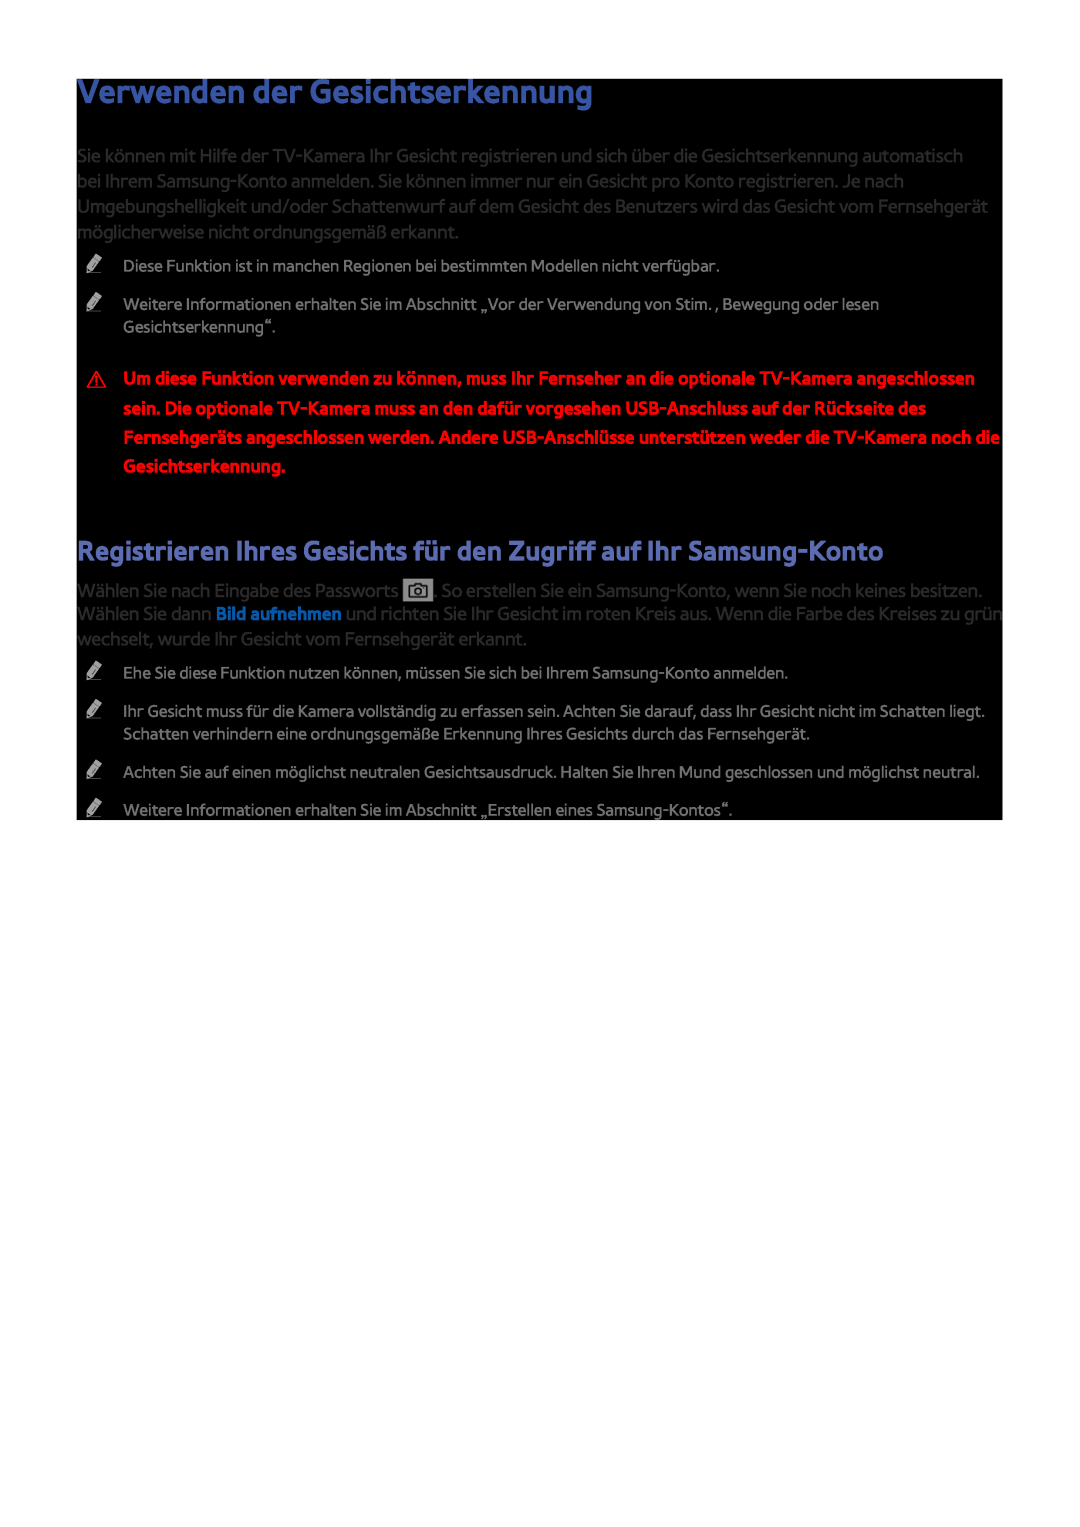 Samsung UE55JU6740UXZG Verwenden der Gesichtserkennung, Registrieren Ihres Gesichts für den Zugriff auf Ihr Samsung-Konto 